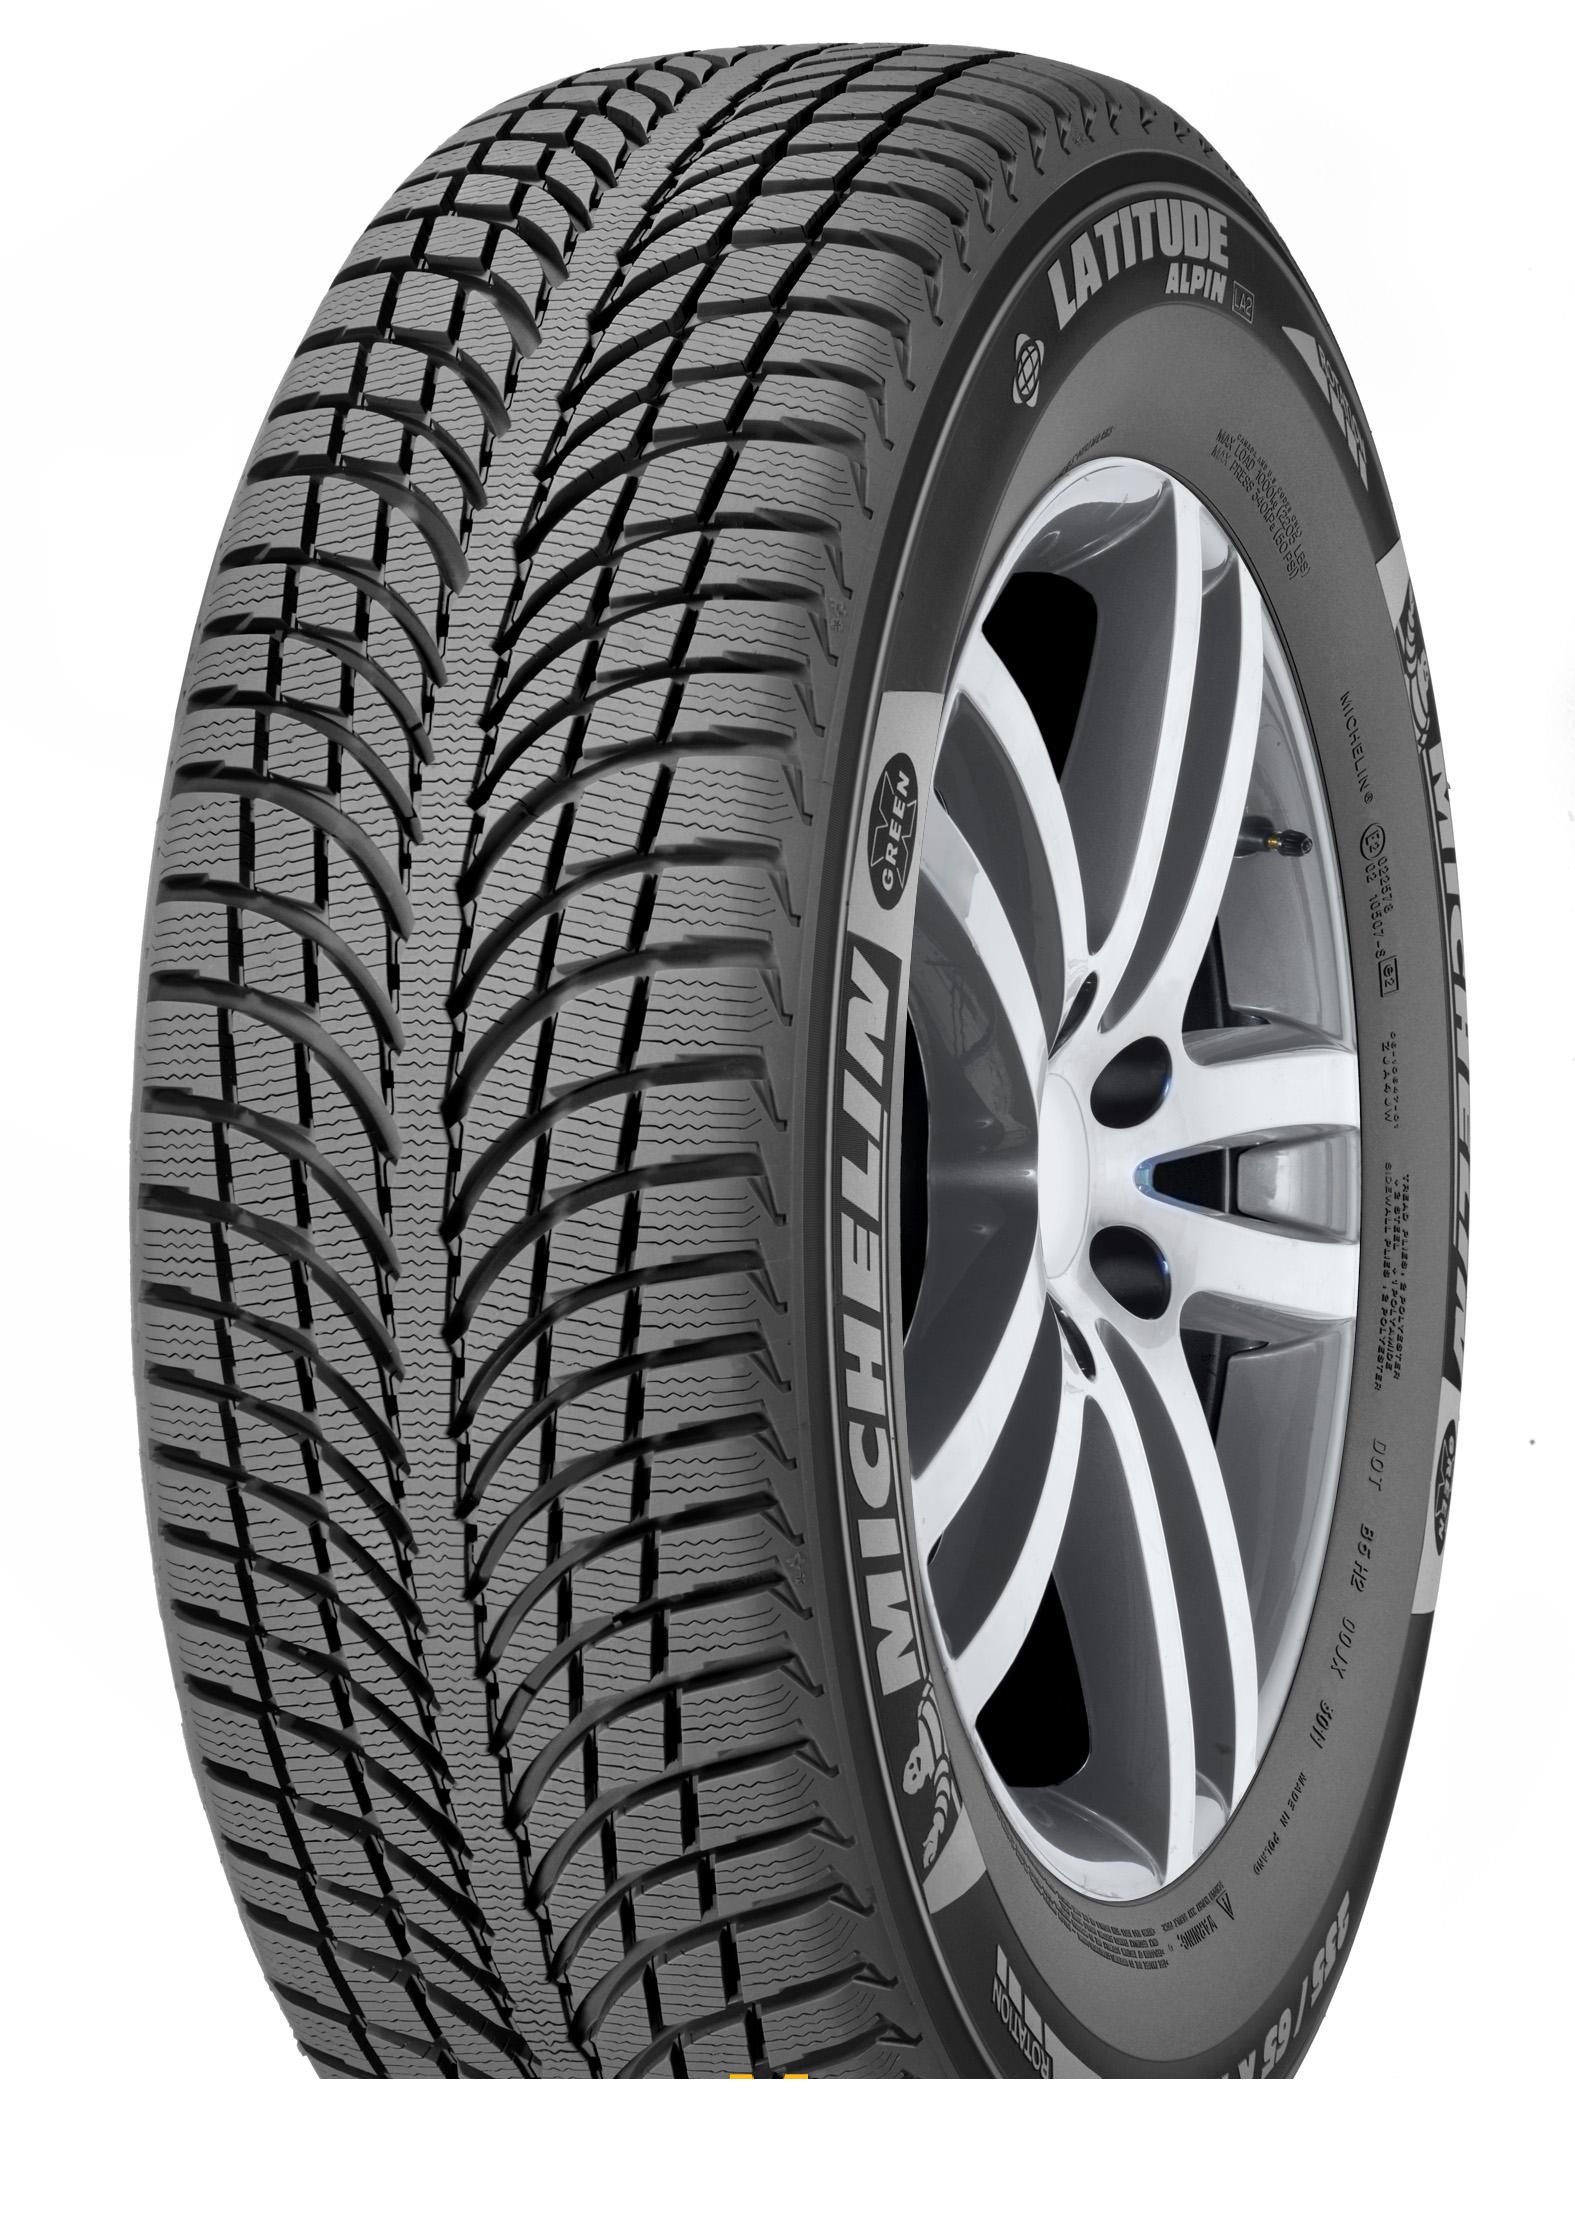 Tire Michelin Latitude Alpin 2 235/65R17 108H - picture, photo, image